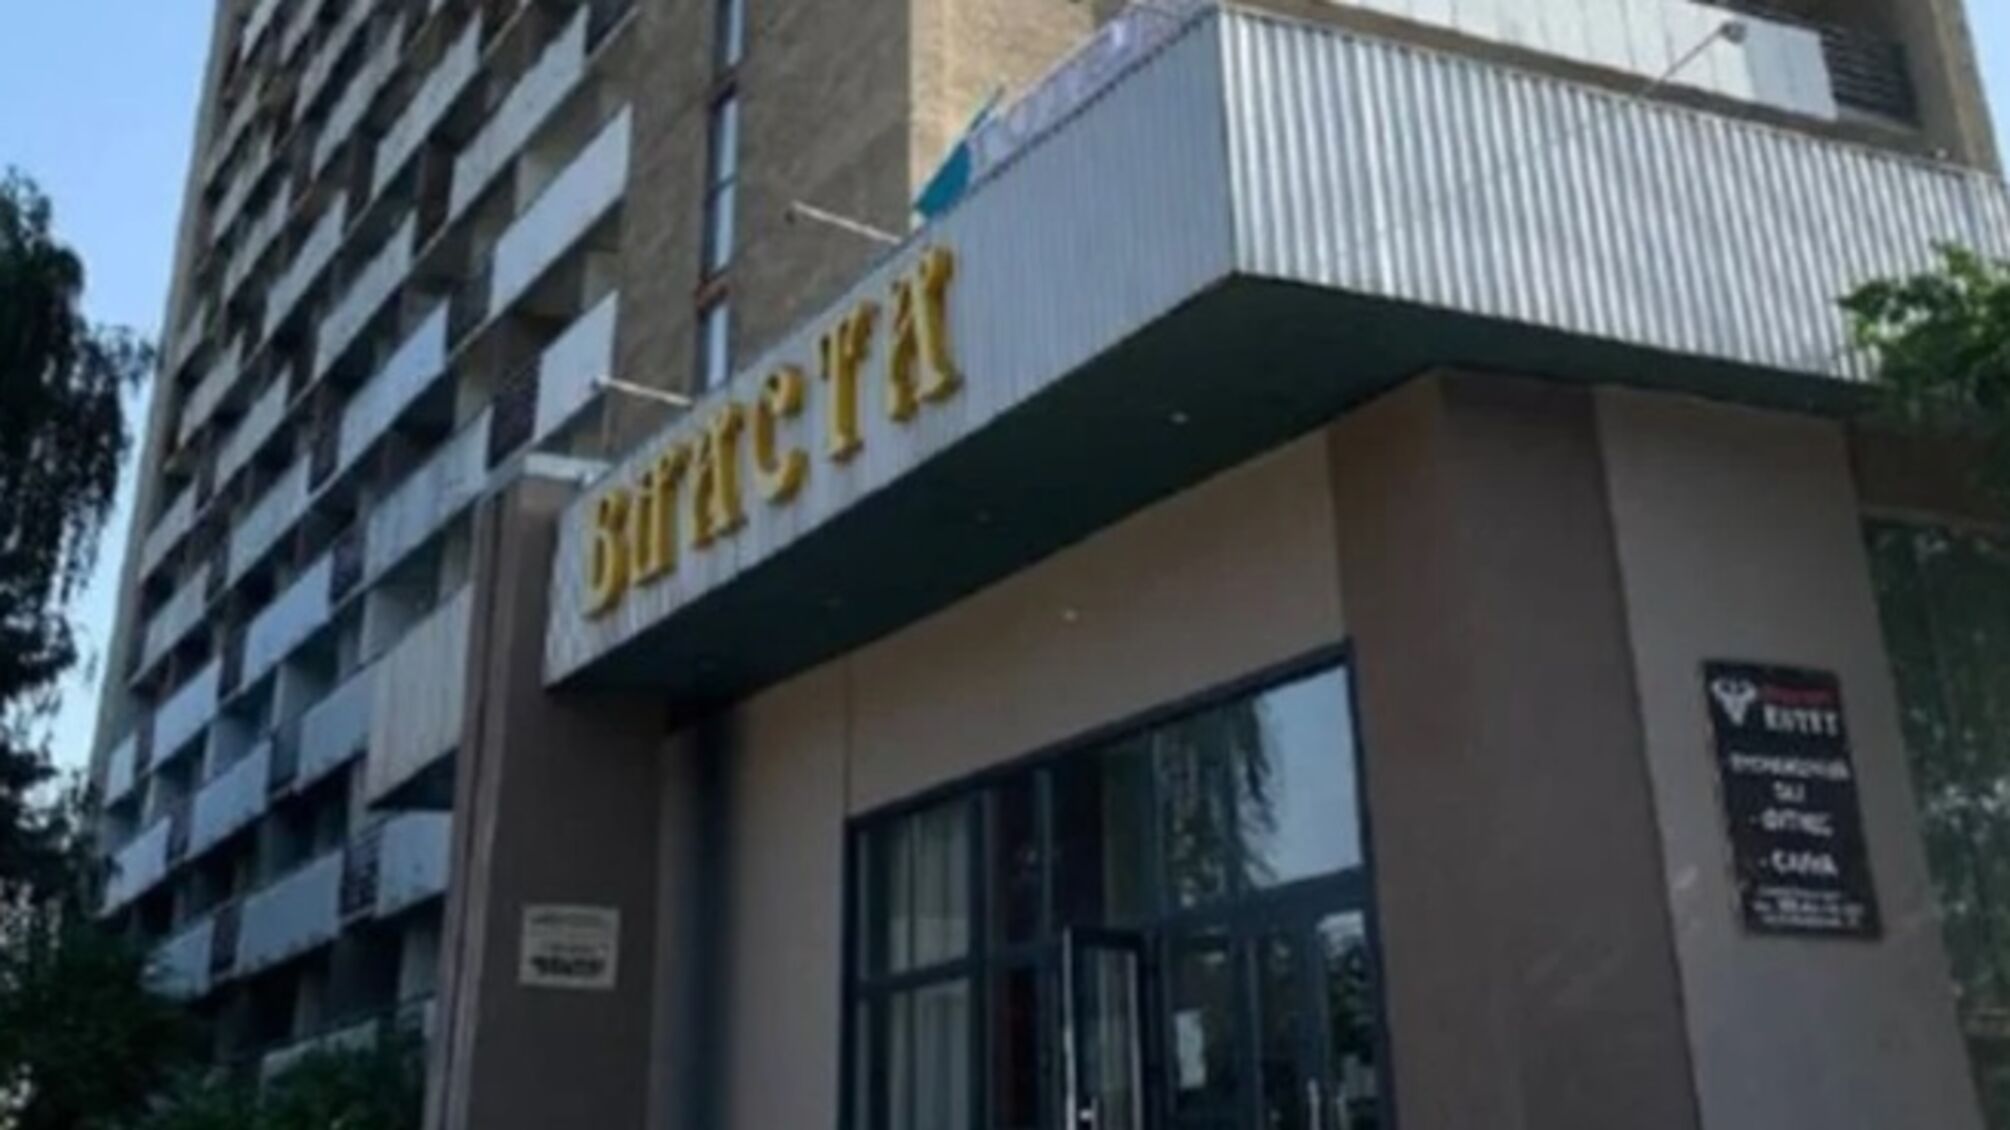 Продажа гостиницы 'Власта' во Львове: почему ФГИУ 'слил' госимущество в два раза дешевле экспертной цены